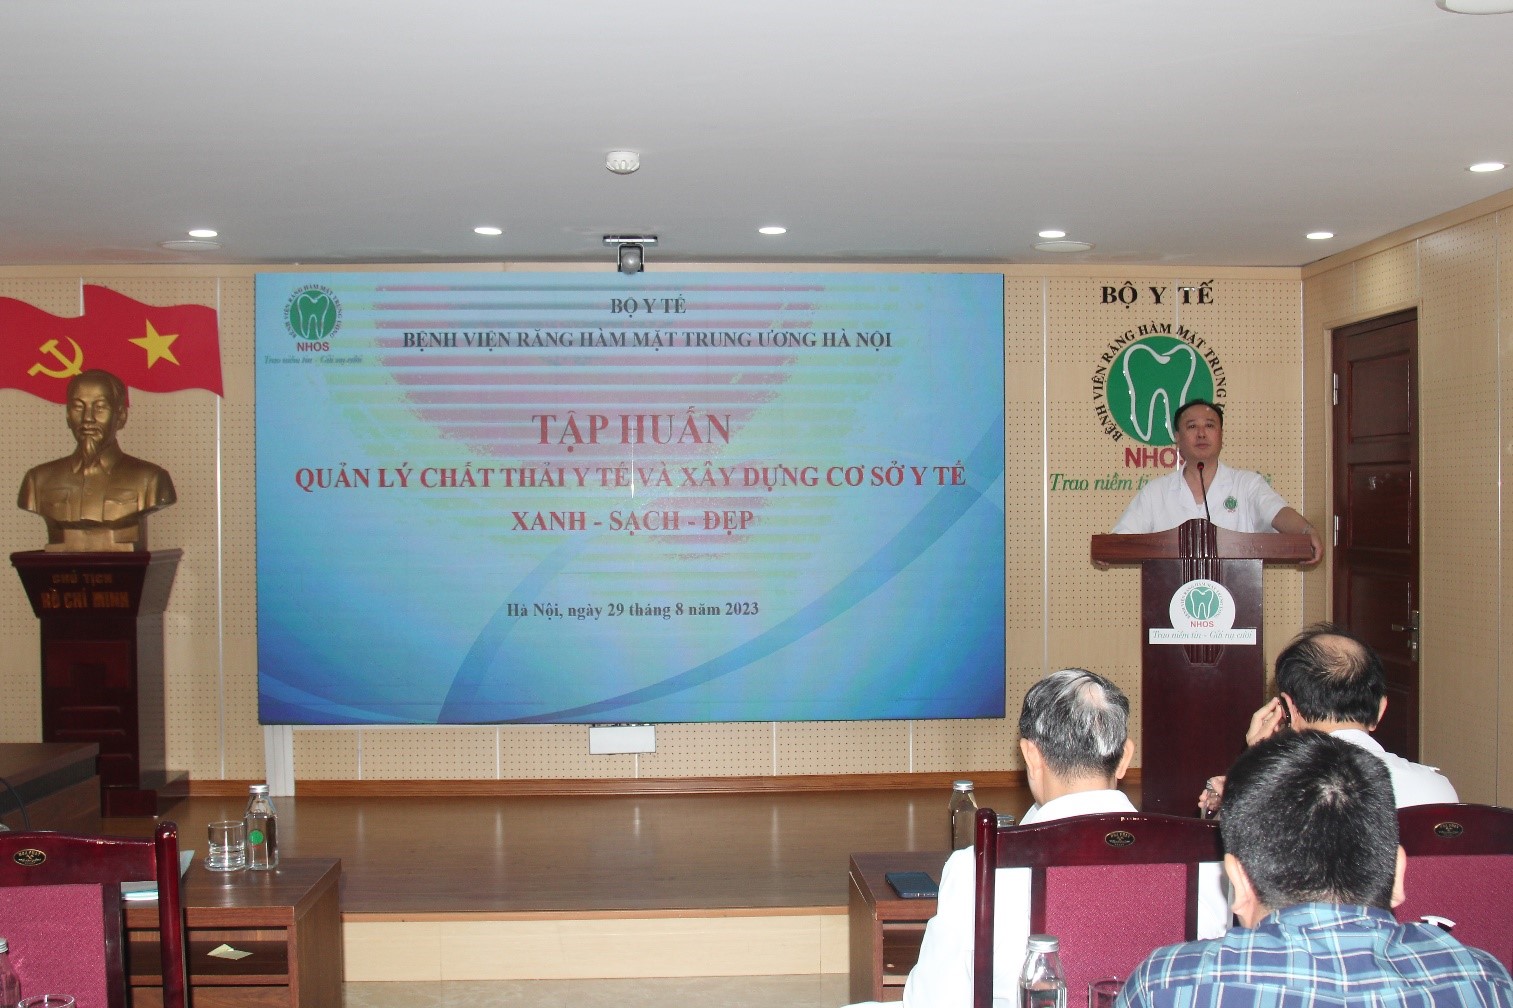 PGS.TS. Trần Cao Bính, Giám đốc Bệnh viện phát biểu tại Lễ phát động và tập huấn Quản lý chất thải y tế và xây dựng cơ sở y tế xanh- sạch- đẹp